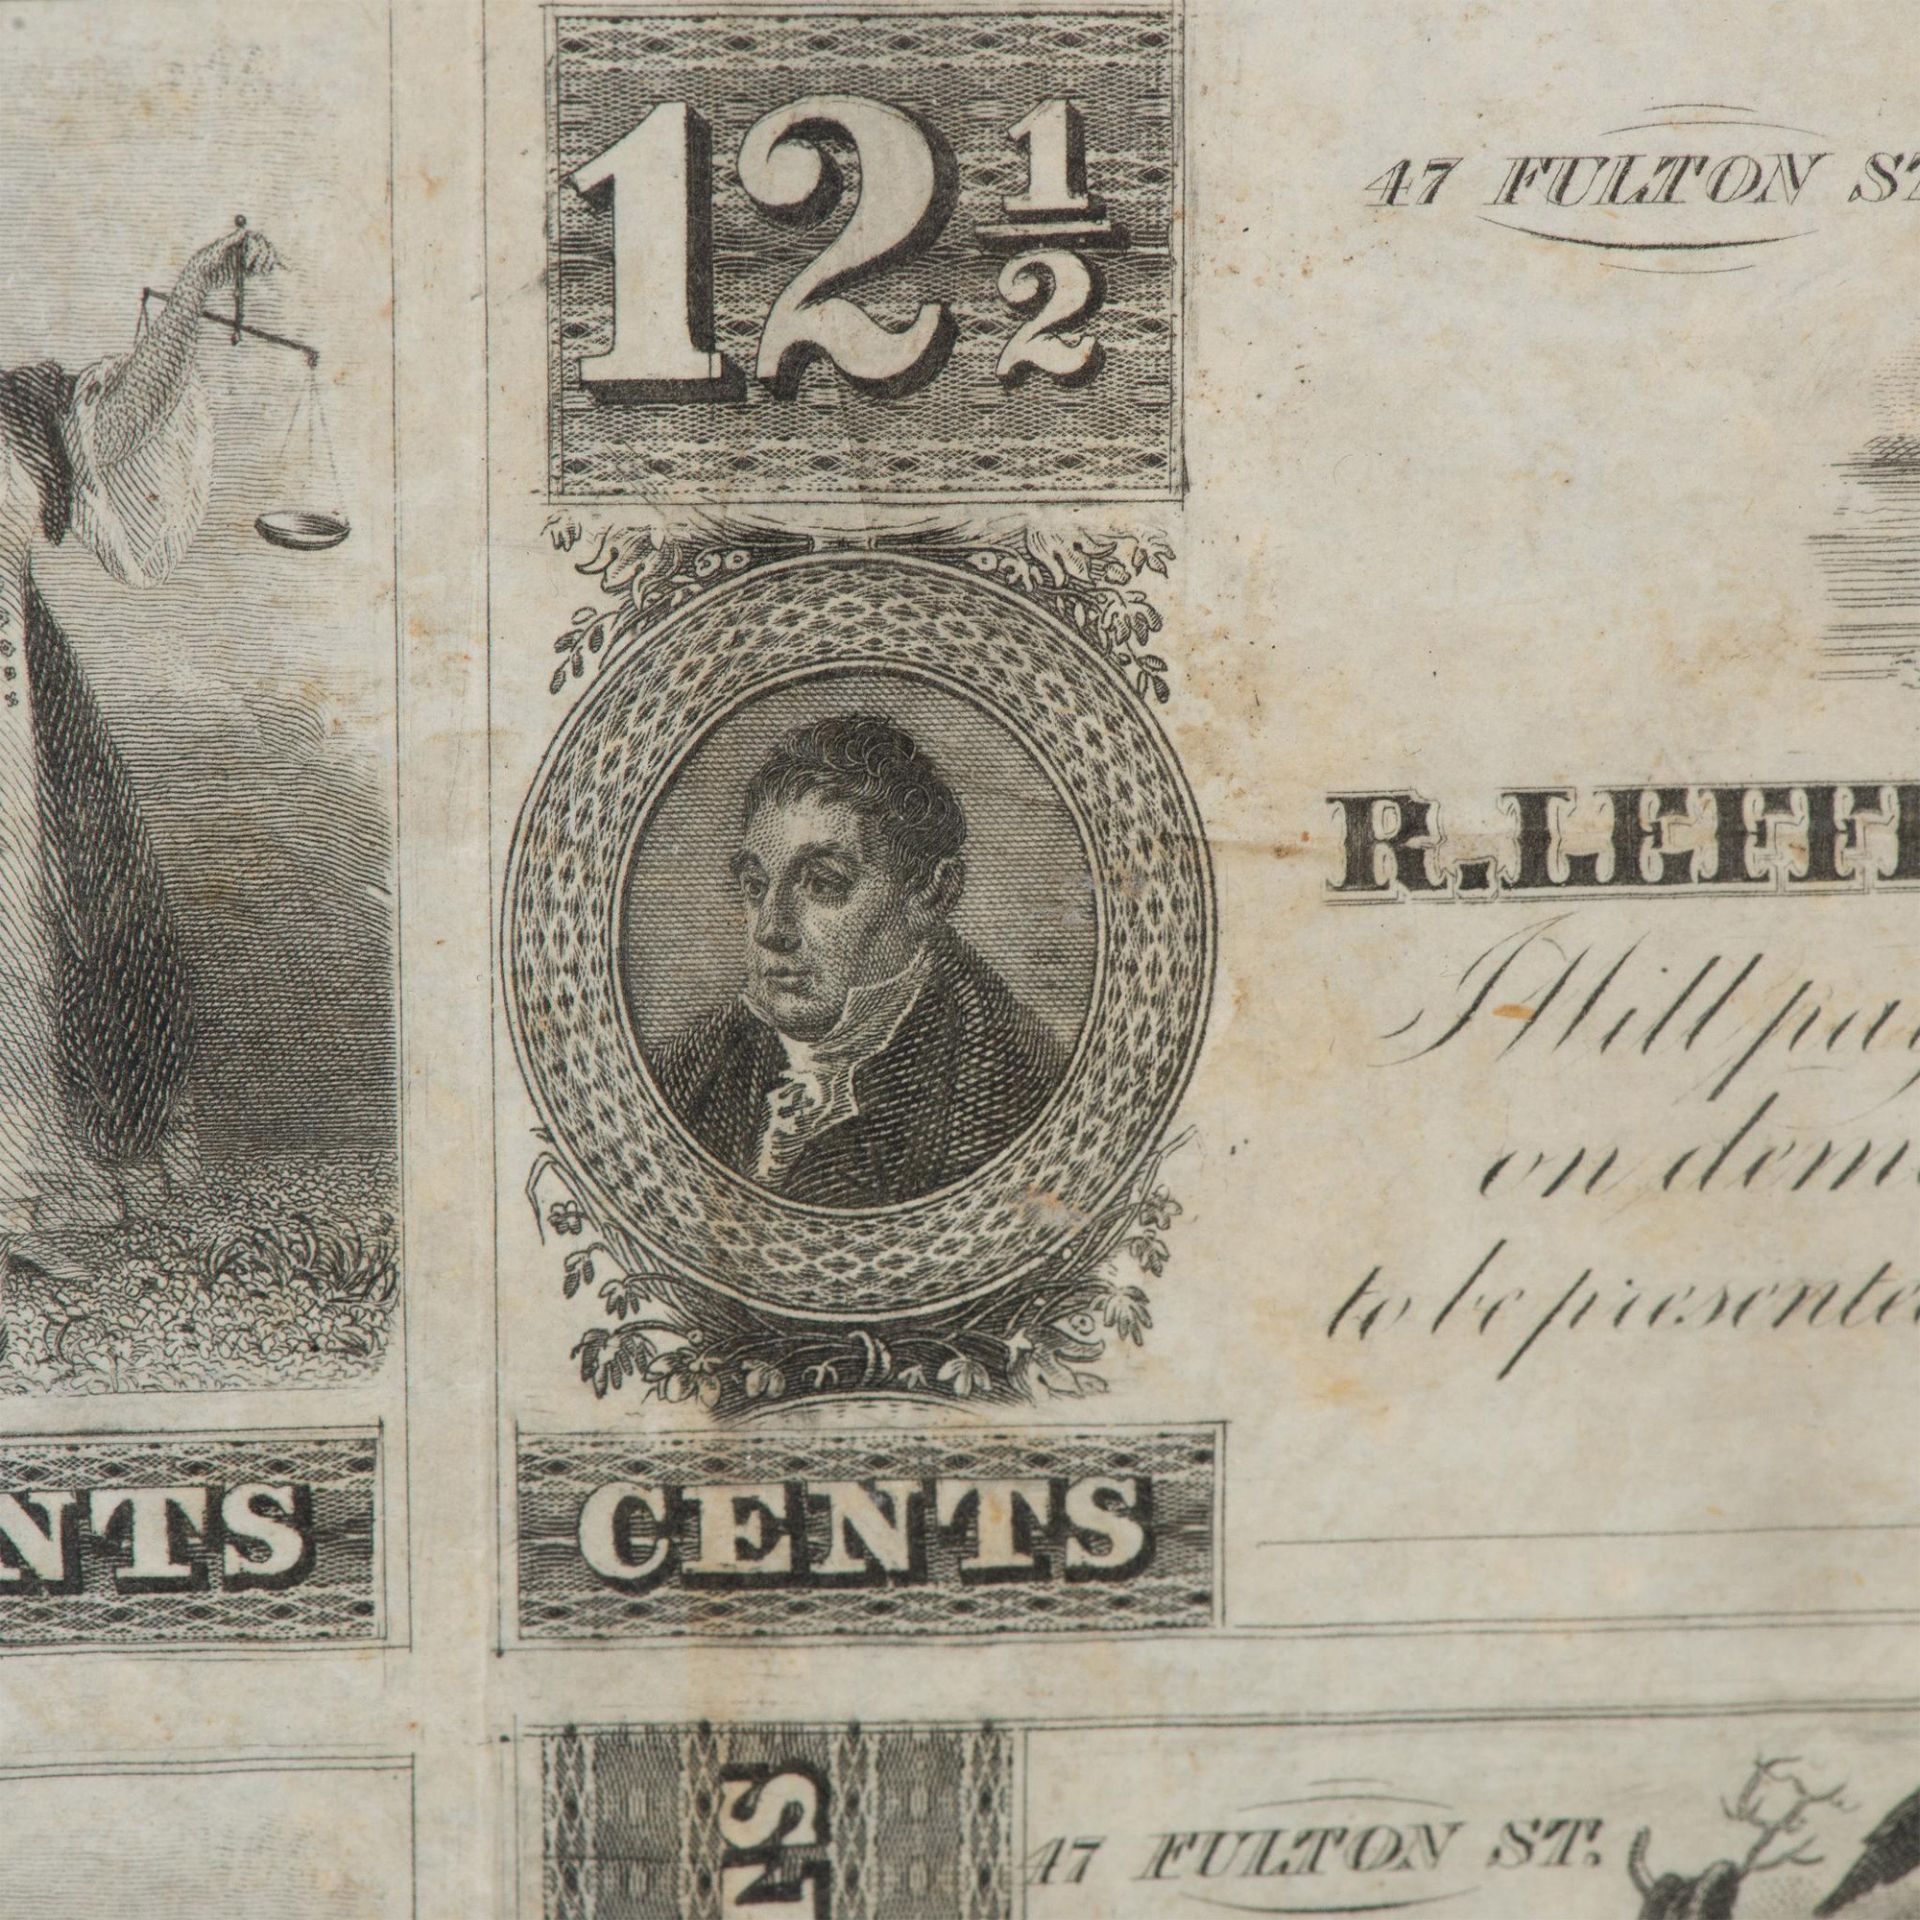 1830 SINGLE UNCUT SHEET WITH 6 R.LEFFERTS EXCHANGE NOTES - Bild 4 aus 5